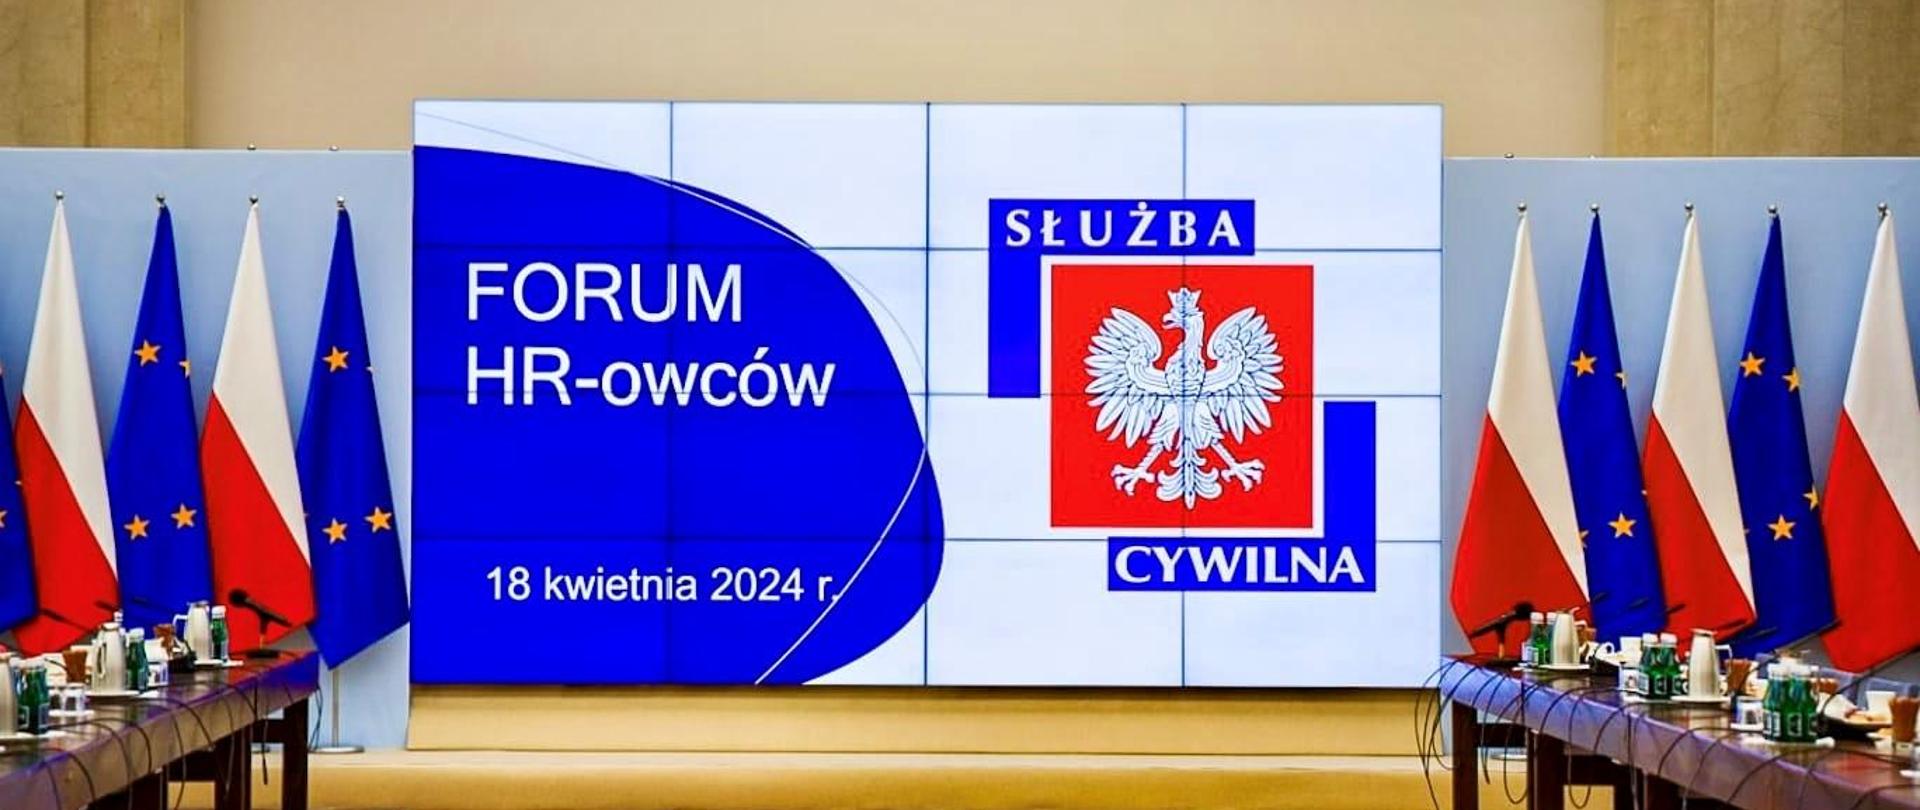 Prezentacja z tytułem "Forum HR-owców", po dwóch stronach flagi Polski i Unii Europejskiej